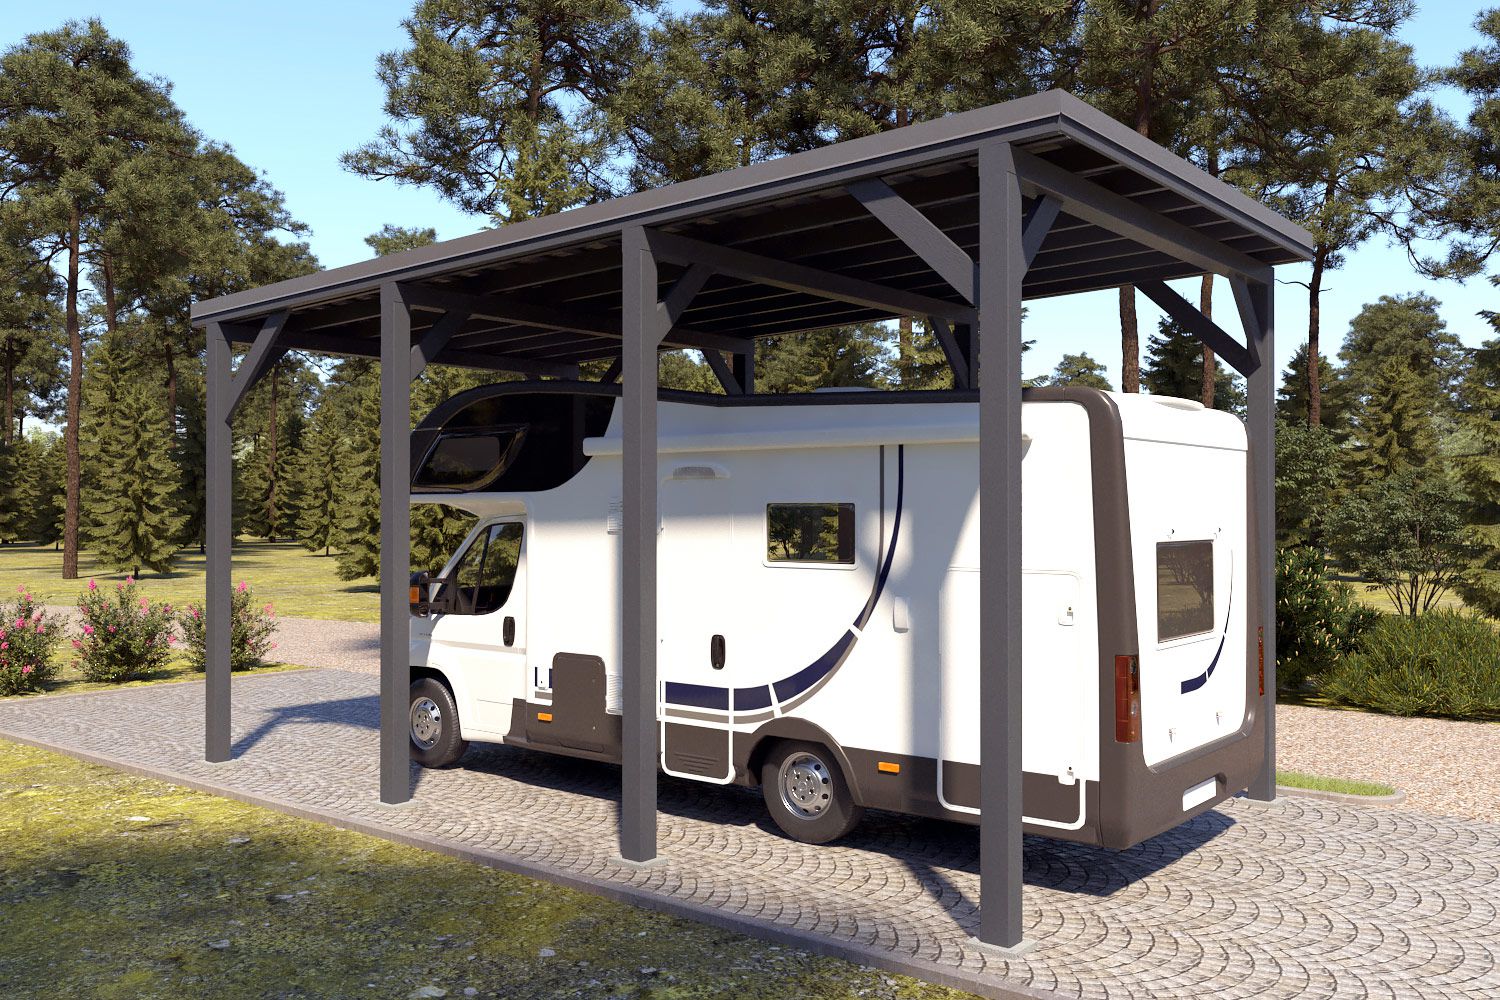 Caravan / camper "Stable" 7 x 4 m (LxB) / 250 kg/m² dak belasting / 28 m² / antracietgrijs met donkergrijs dak